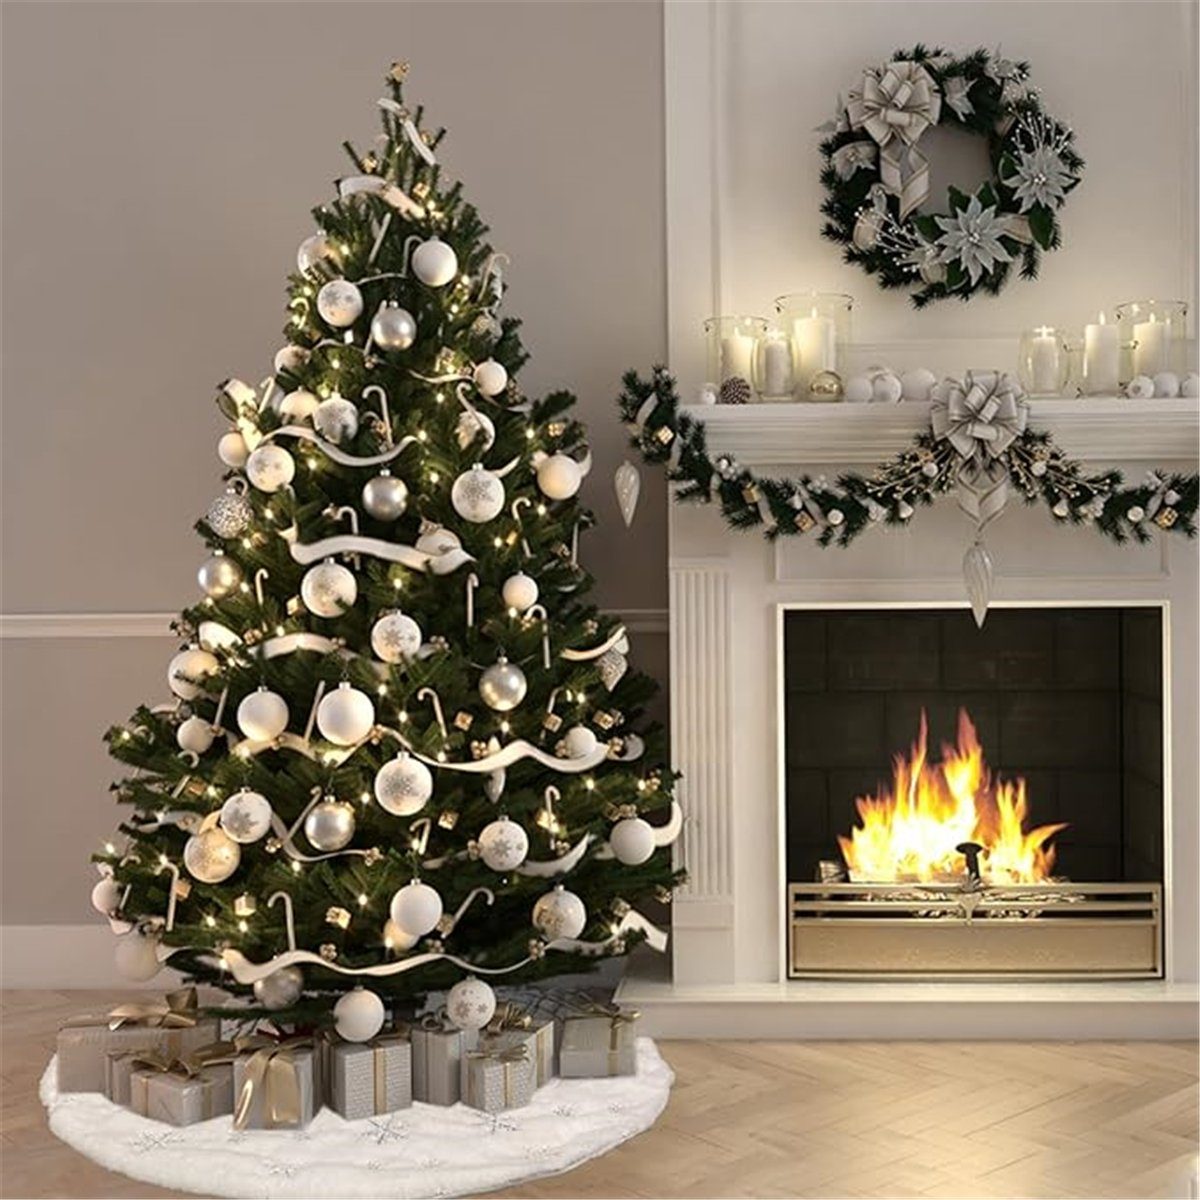 TUABUR mit silbernem Weißer Schneeflockendruck Plüsch-Weihnachtsbaumrock Weihnachtsbaumdecke